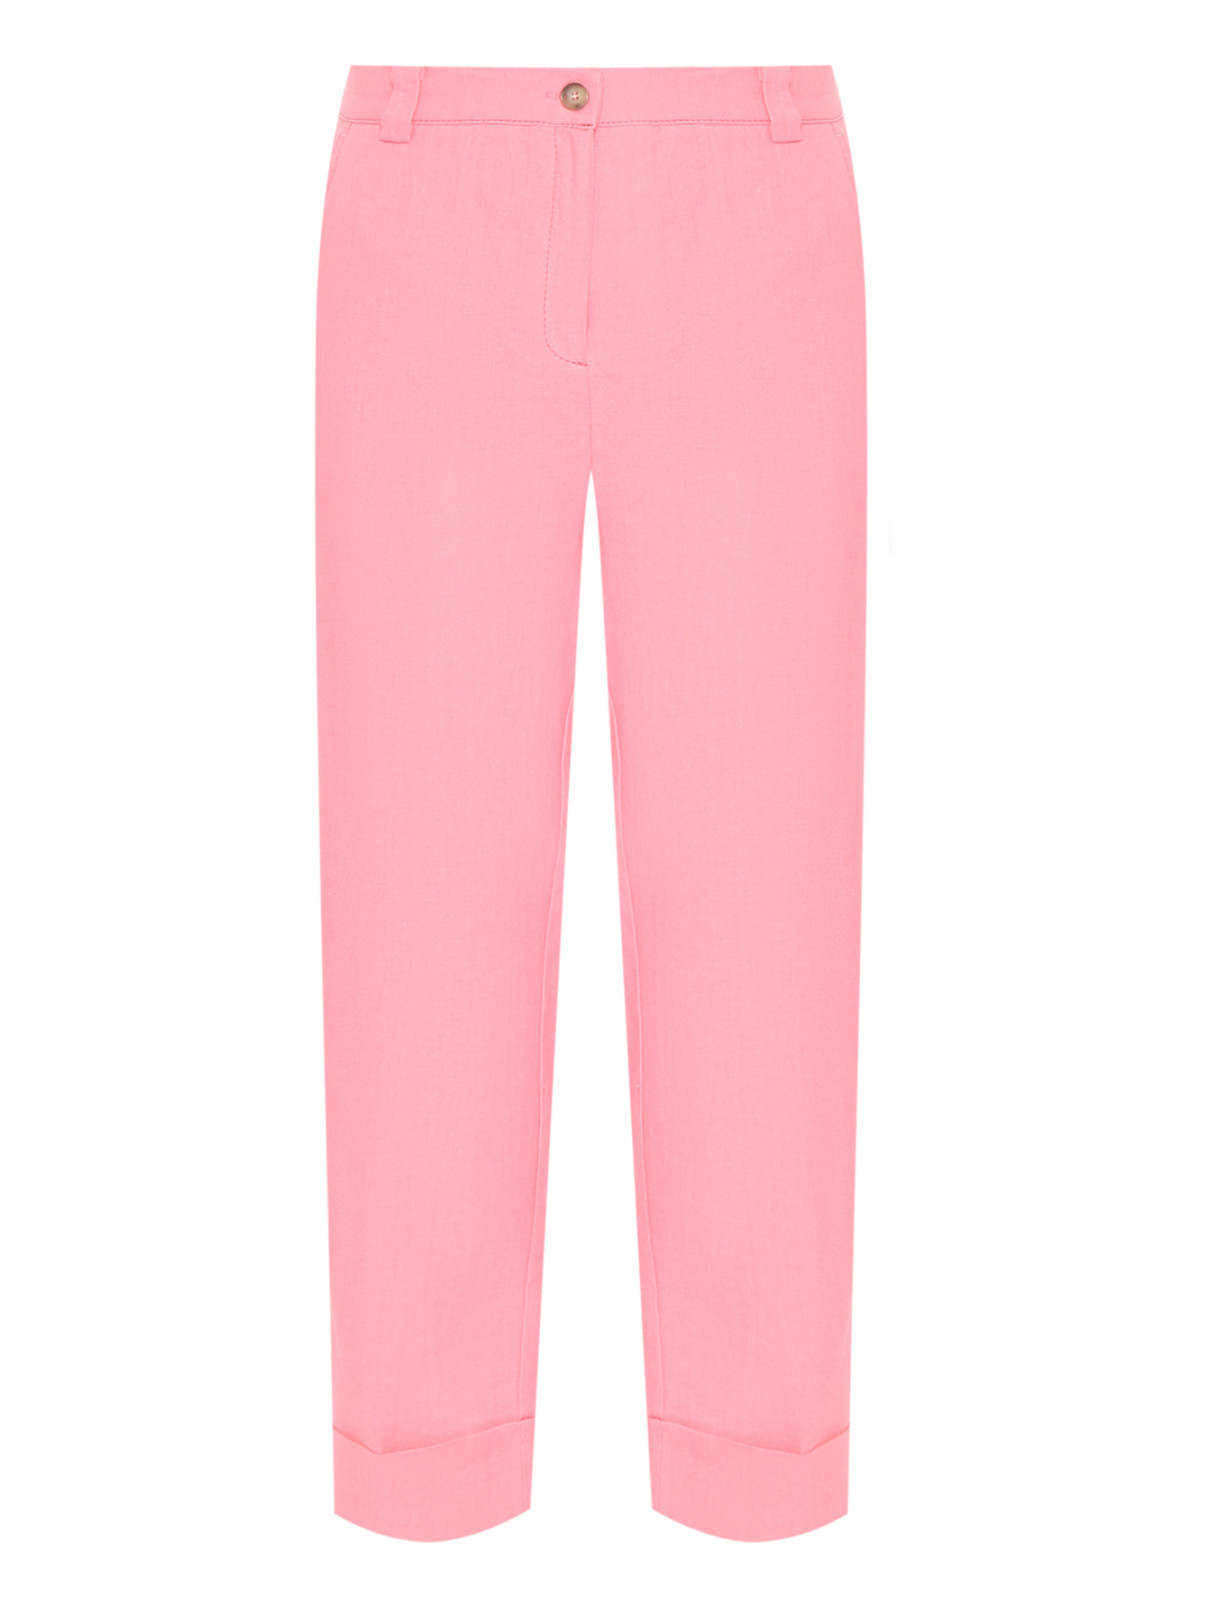 Брюки из льна и хлопка с карманами Marina Rinaldi  –  Общий вид  – Цвет:  Розовый